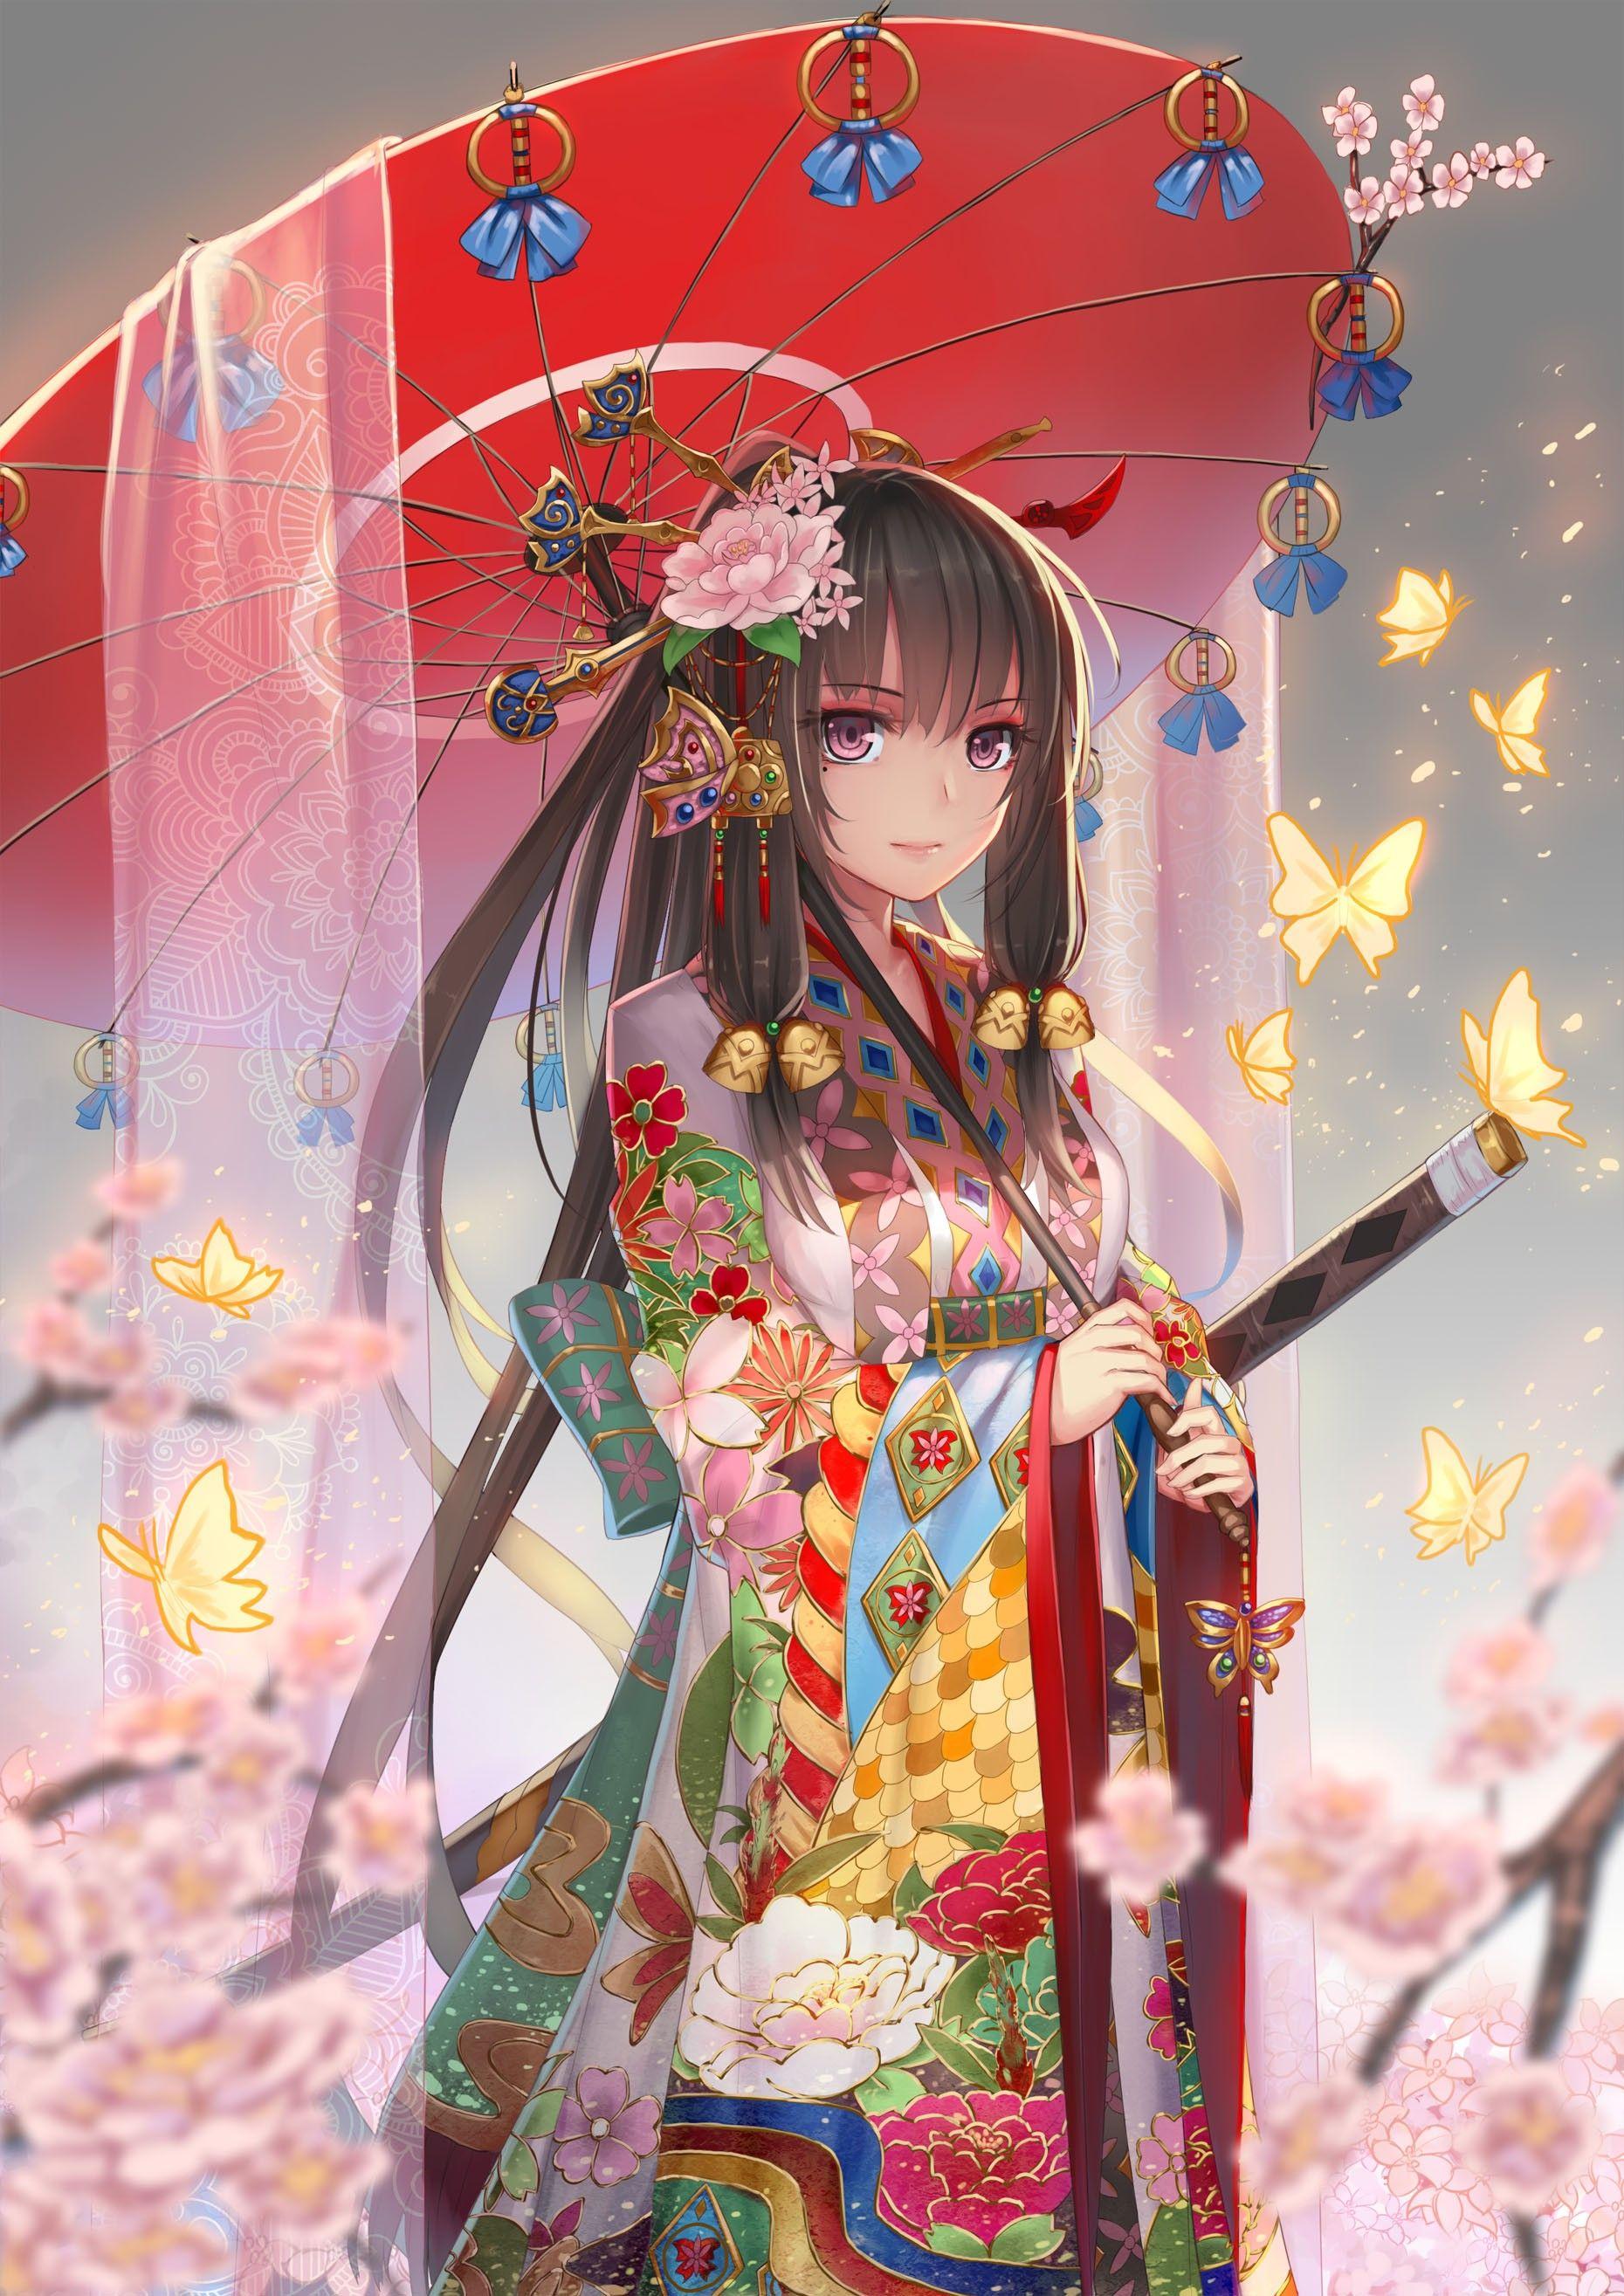 Anime Girl Kimono And Weapon Wallpapers - Wallpaper Cave